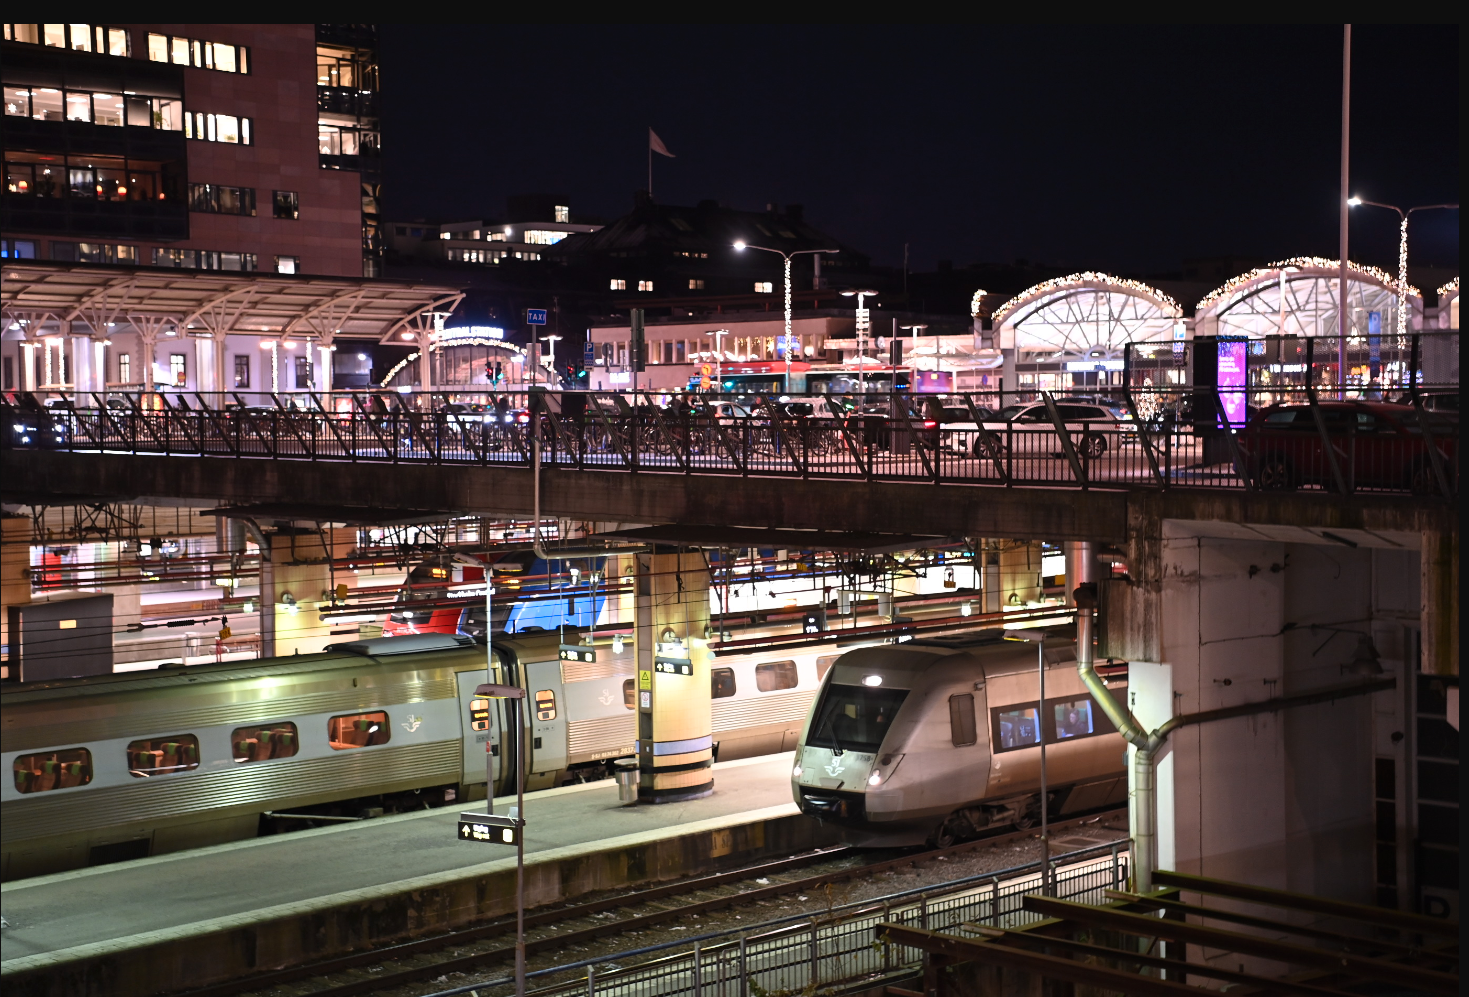 Stillastående tåg på Stockholms central under onsdagskvällen.